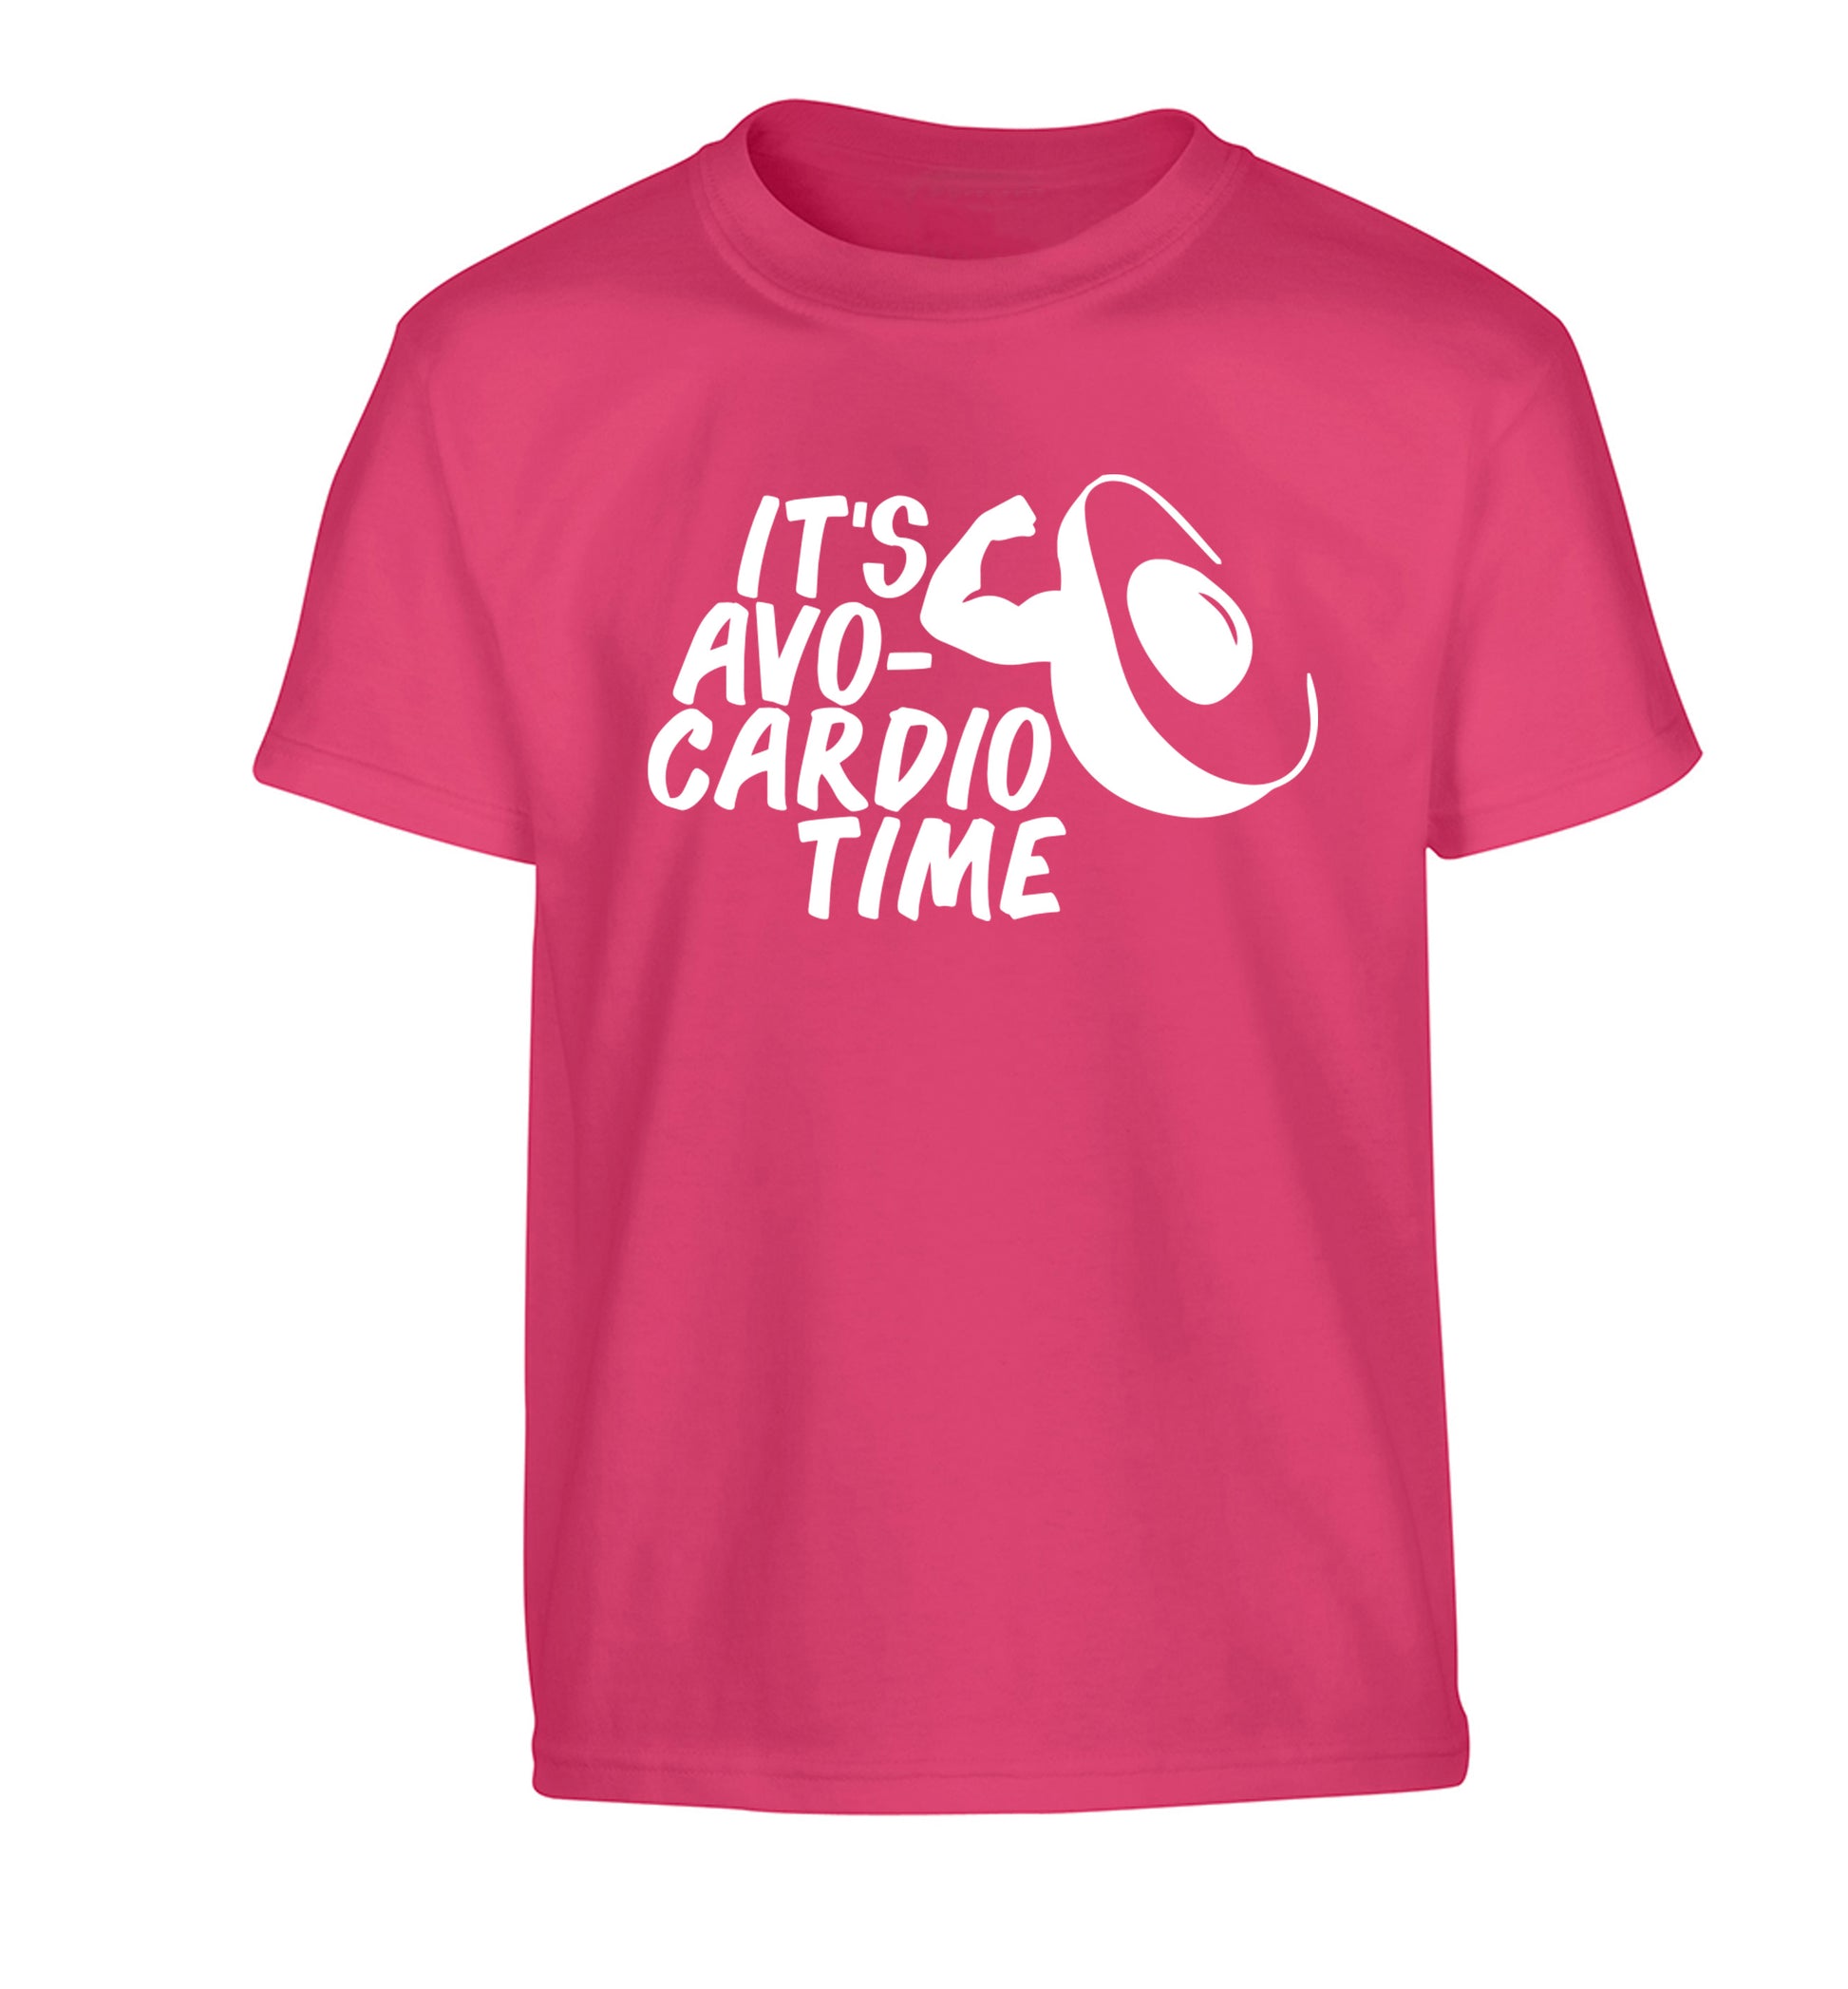 It's avo-cardio time Children's pink Tshirt 12-14 Years